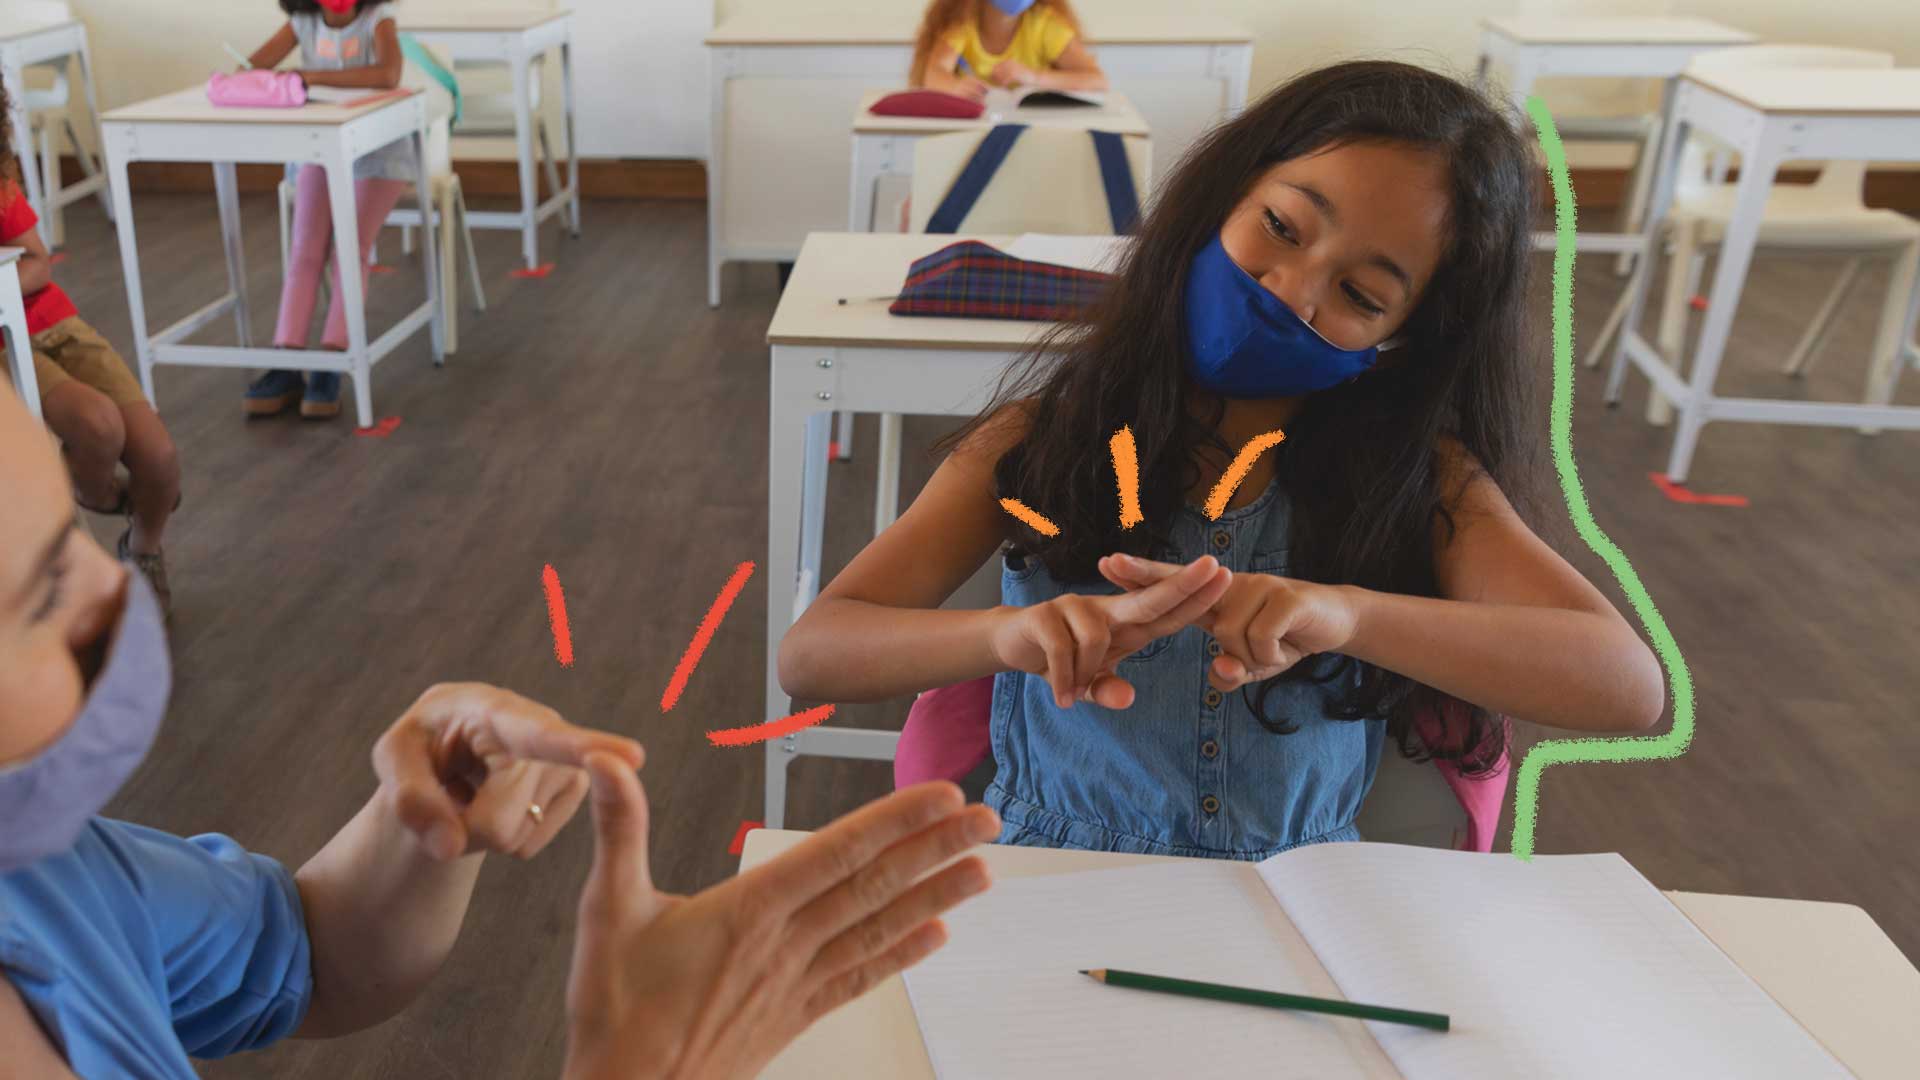 Uma menina de cabelos pretos e lisos, usando máscara de proteção respiratória, está sentada em uma carteira em uma sala de aula, se comunicando por Libras com outra pessoa à sua frente (só aparece as mãos)